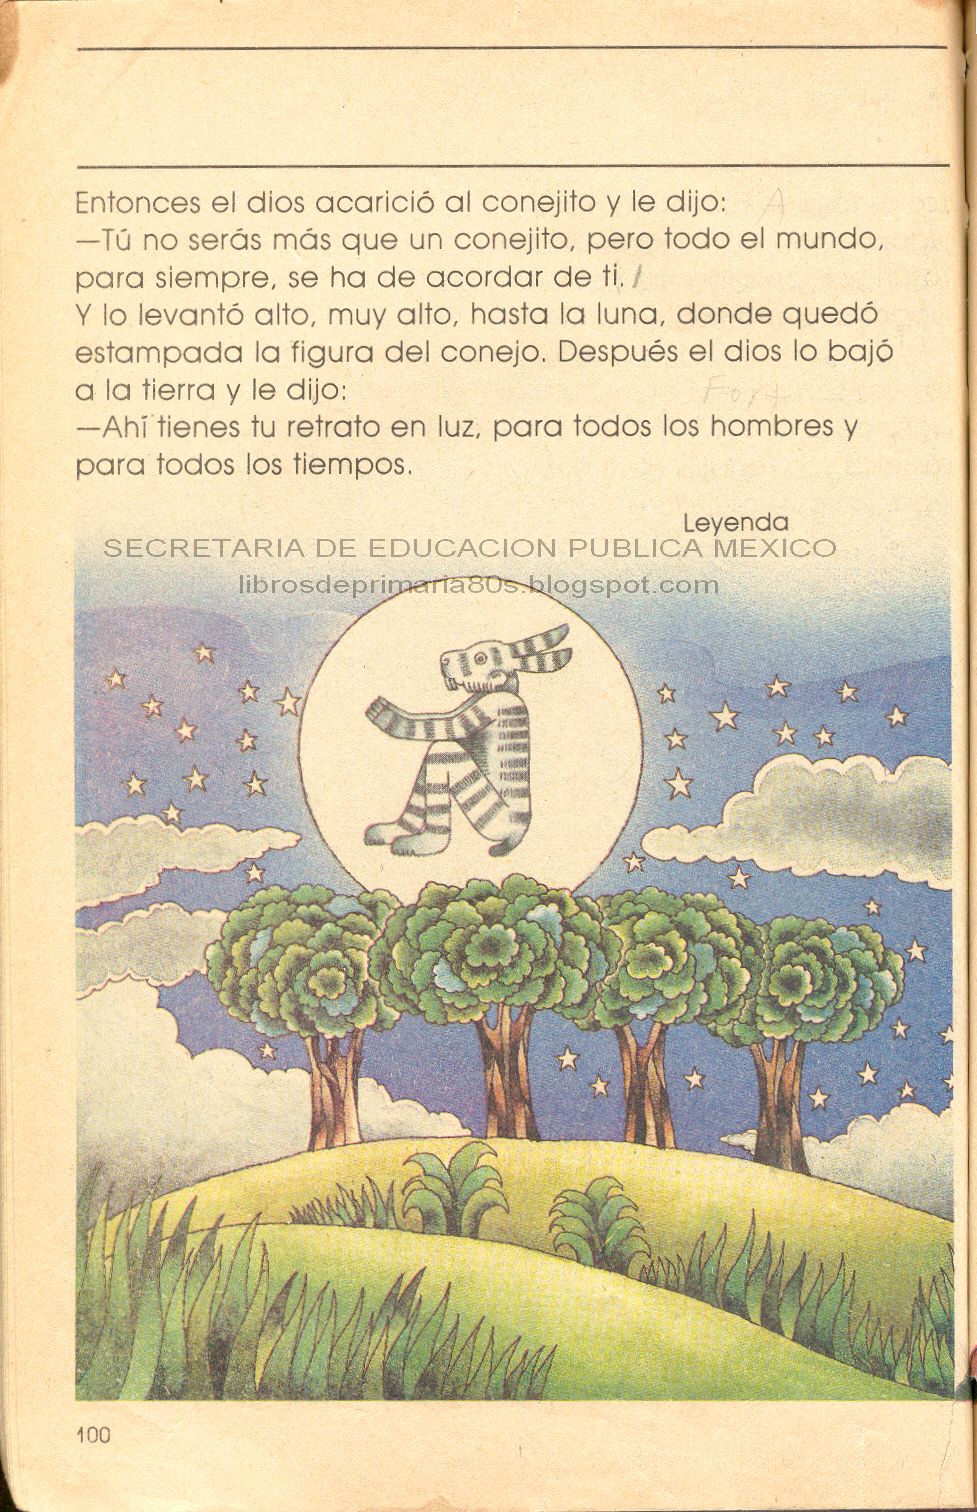 Libros de Primaria de los 80's: El conejo de la luna (Mi libro de segundo  Lecturas)